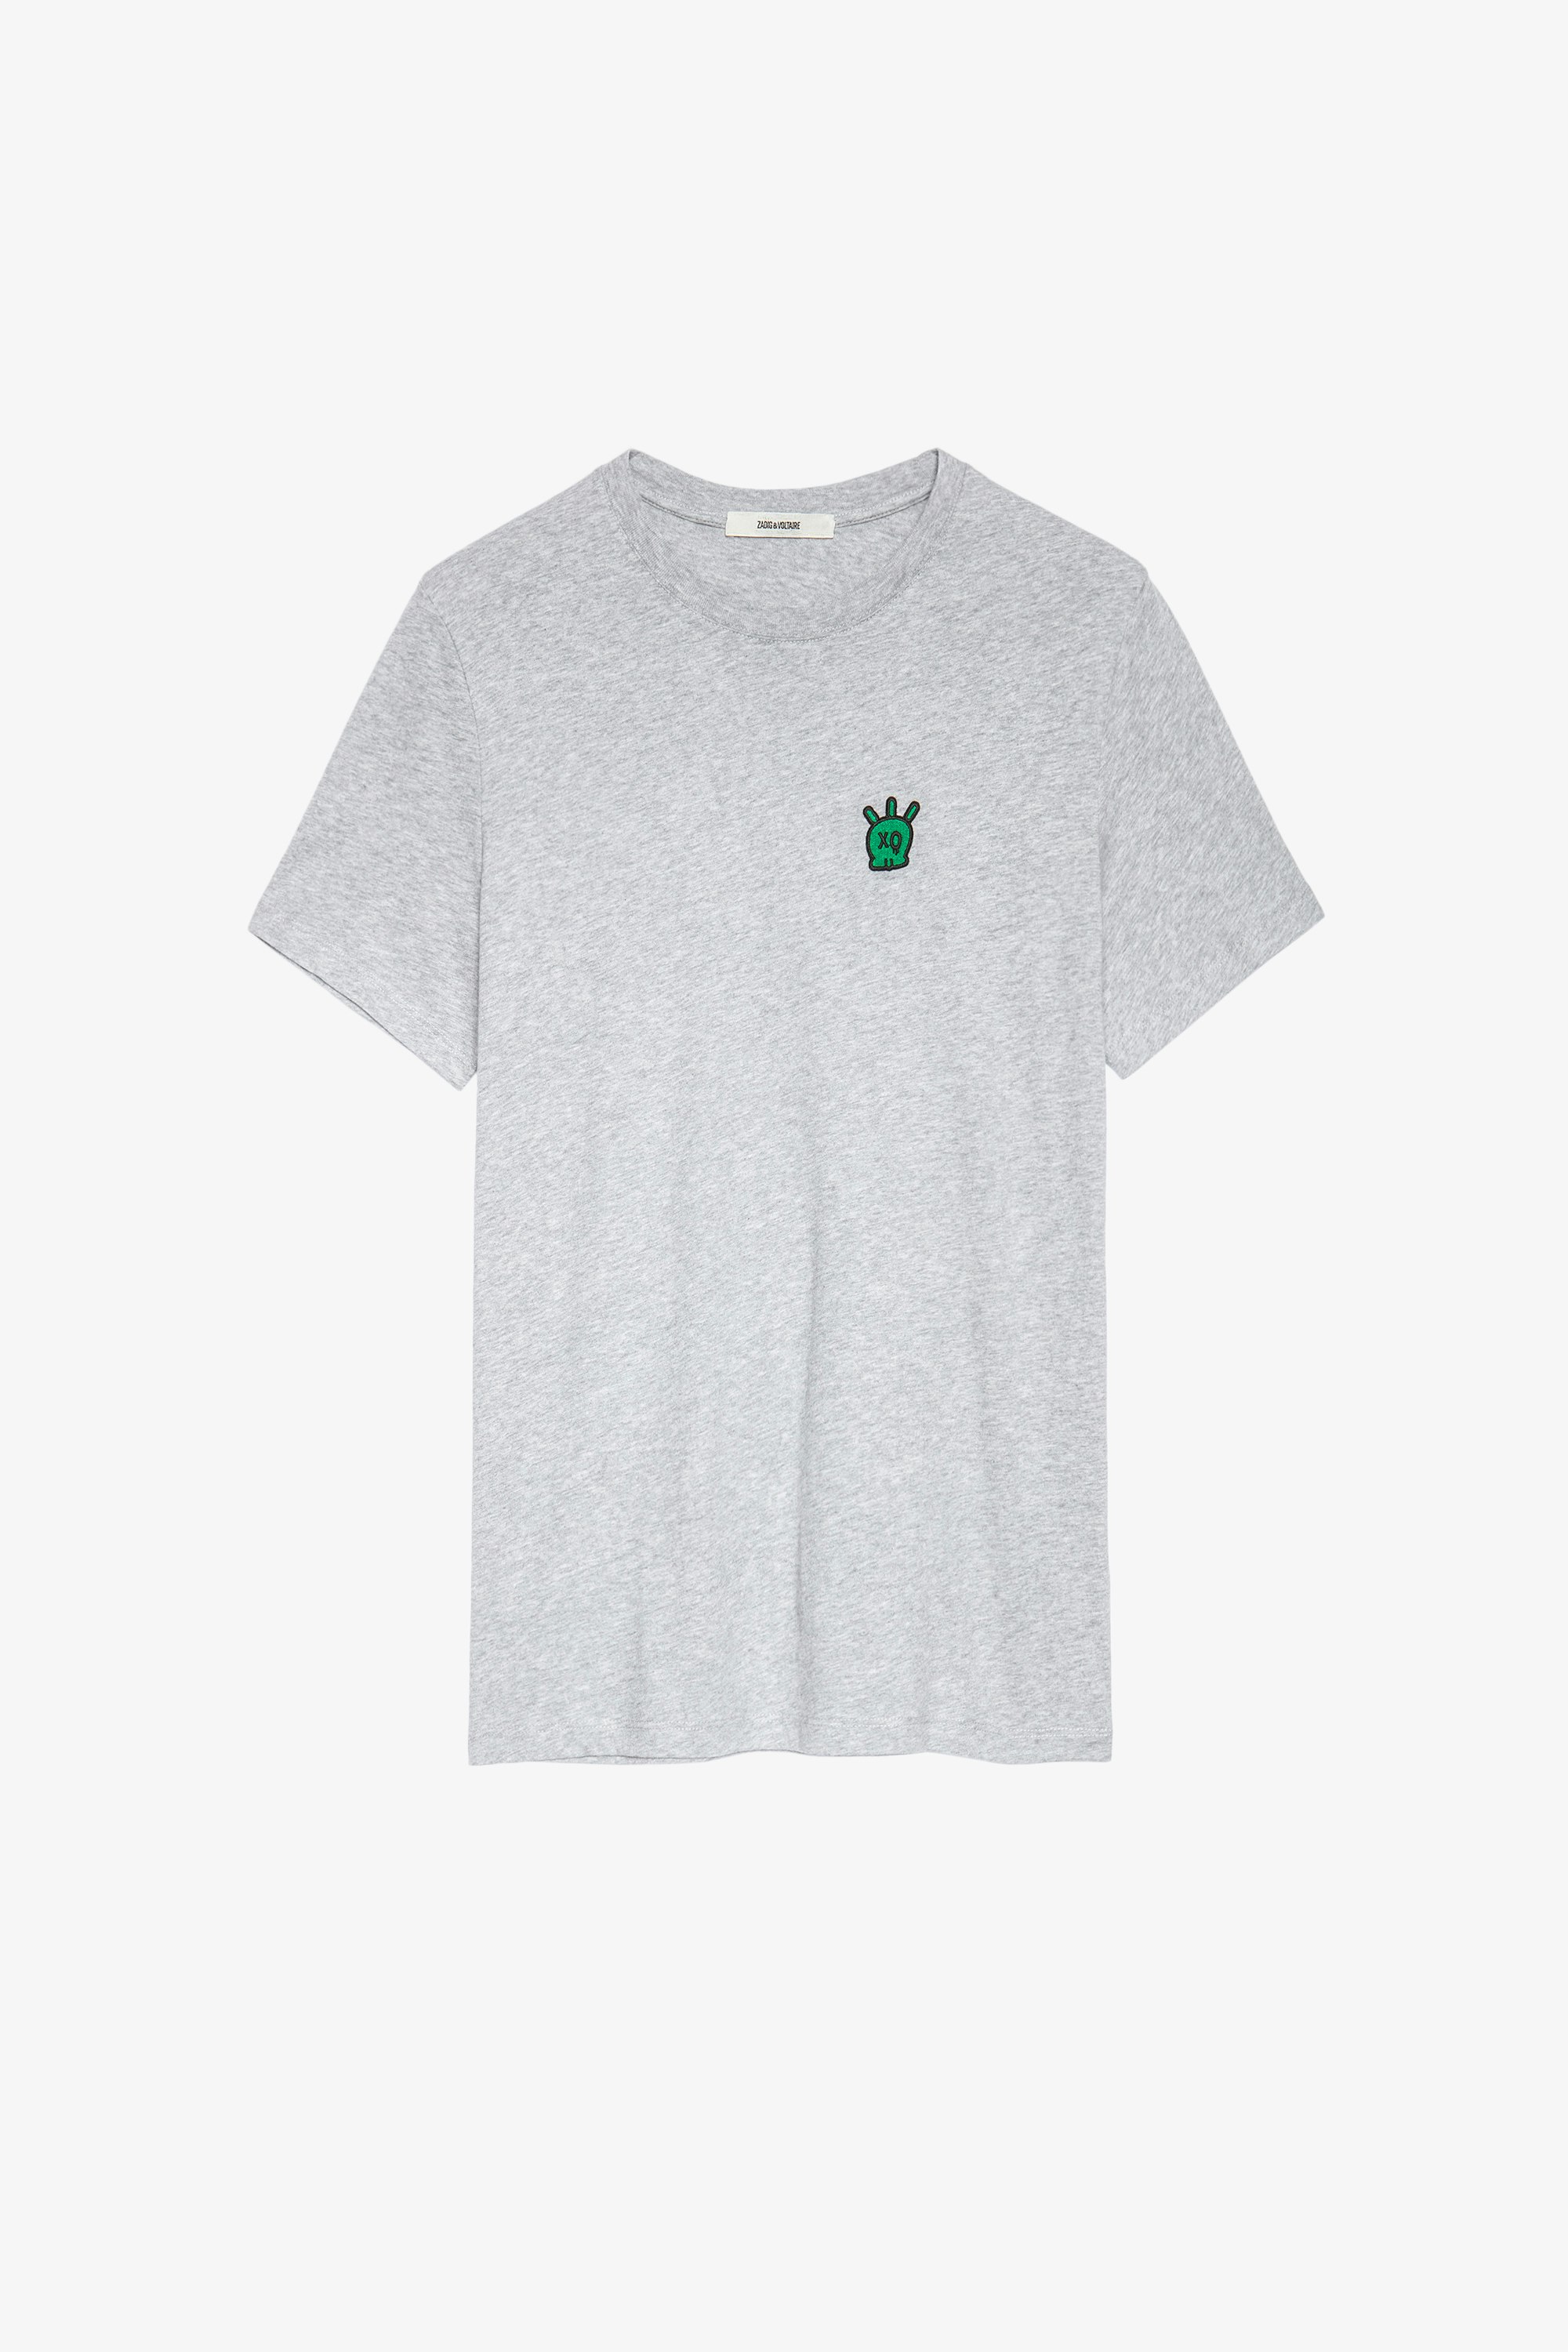 T-Shirt Tommy Skull Grau meliertes Herren-T-Shirt aus Baumwolle mit Totenkopfaufnäher. Dieses Produkt ist nach GOTS zertifiziert und aus Fasern aus biologischem Anbau hergestellt.